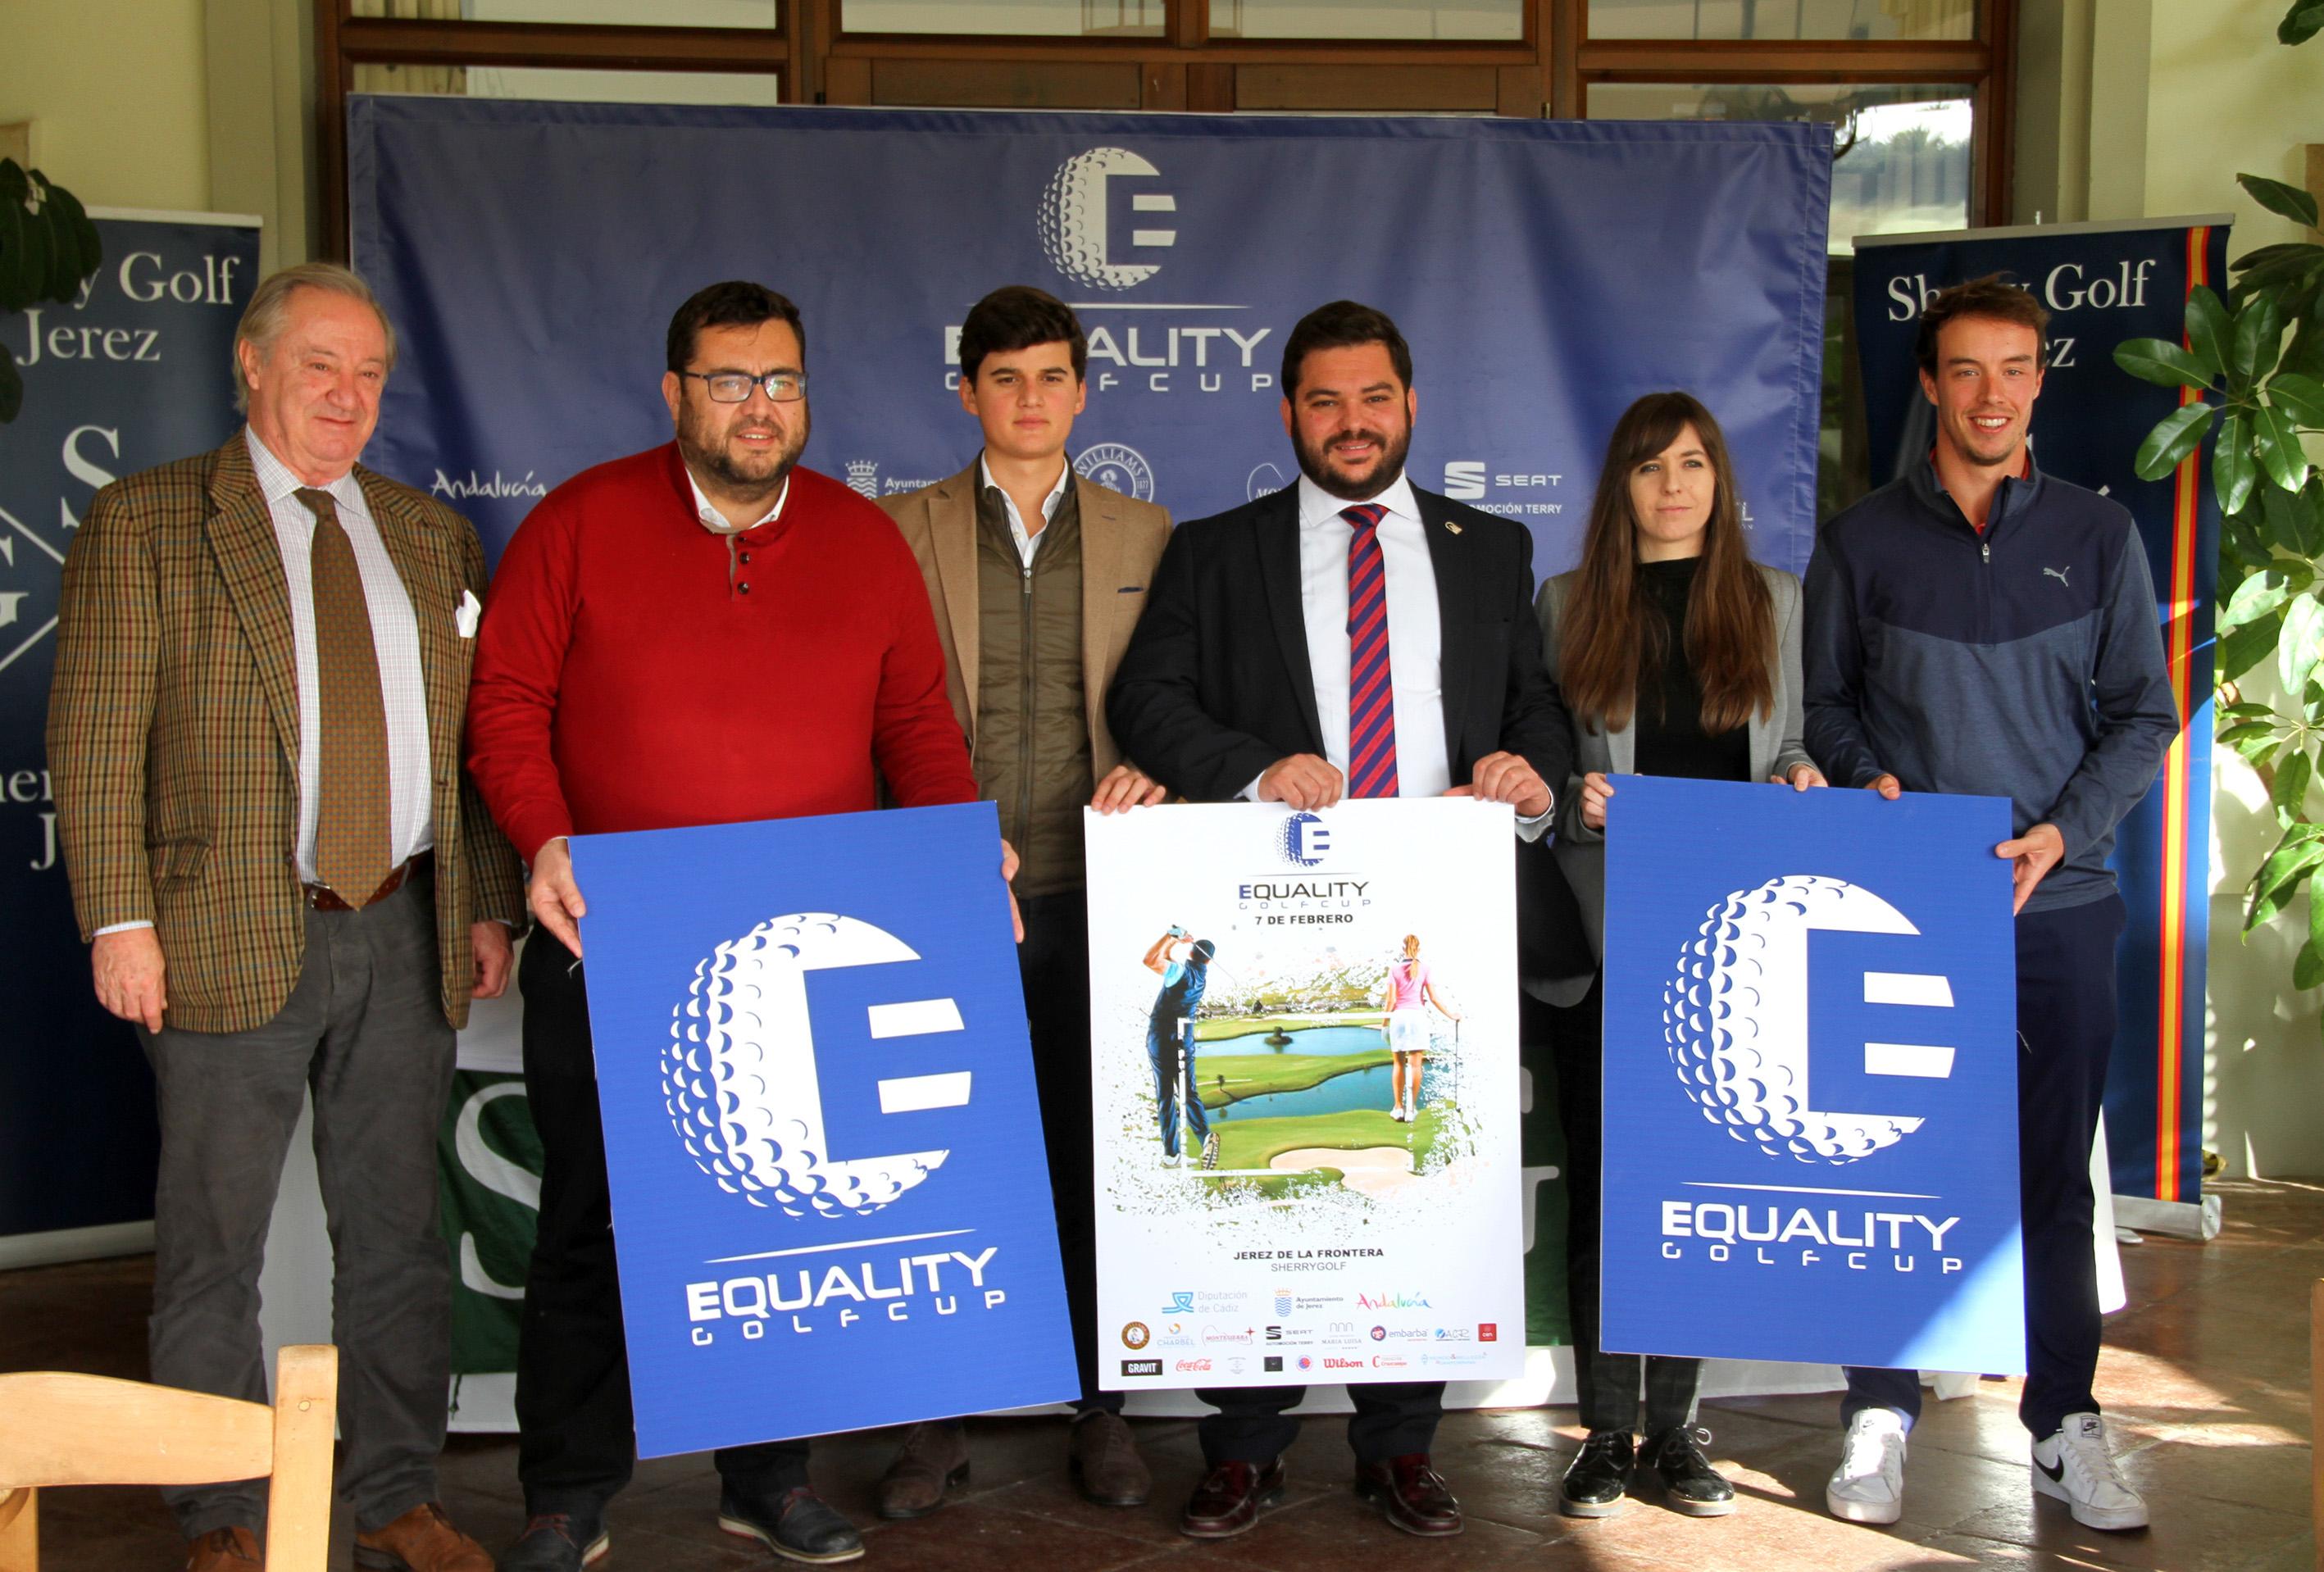 Presentado el Circuito solidario Equality Golf Cup en Sherry Golf Jerez (7 de febrero)